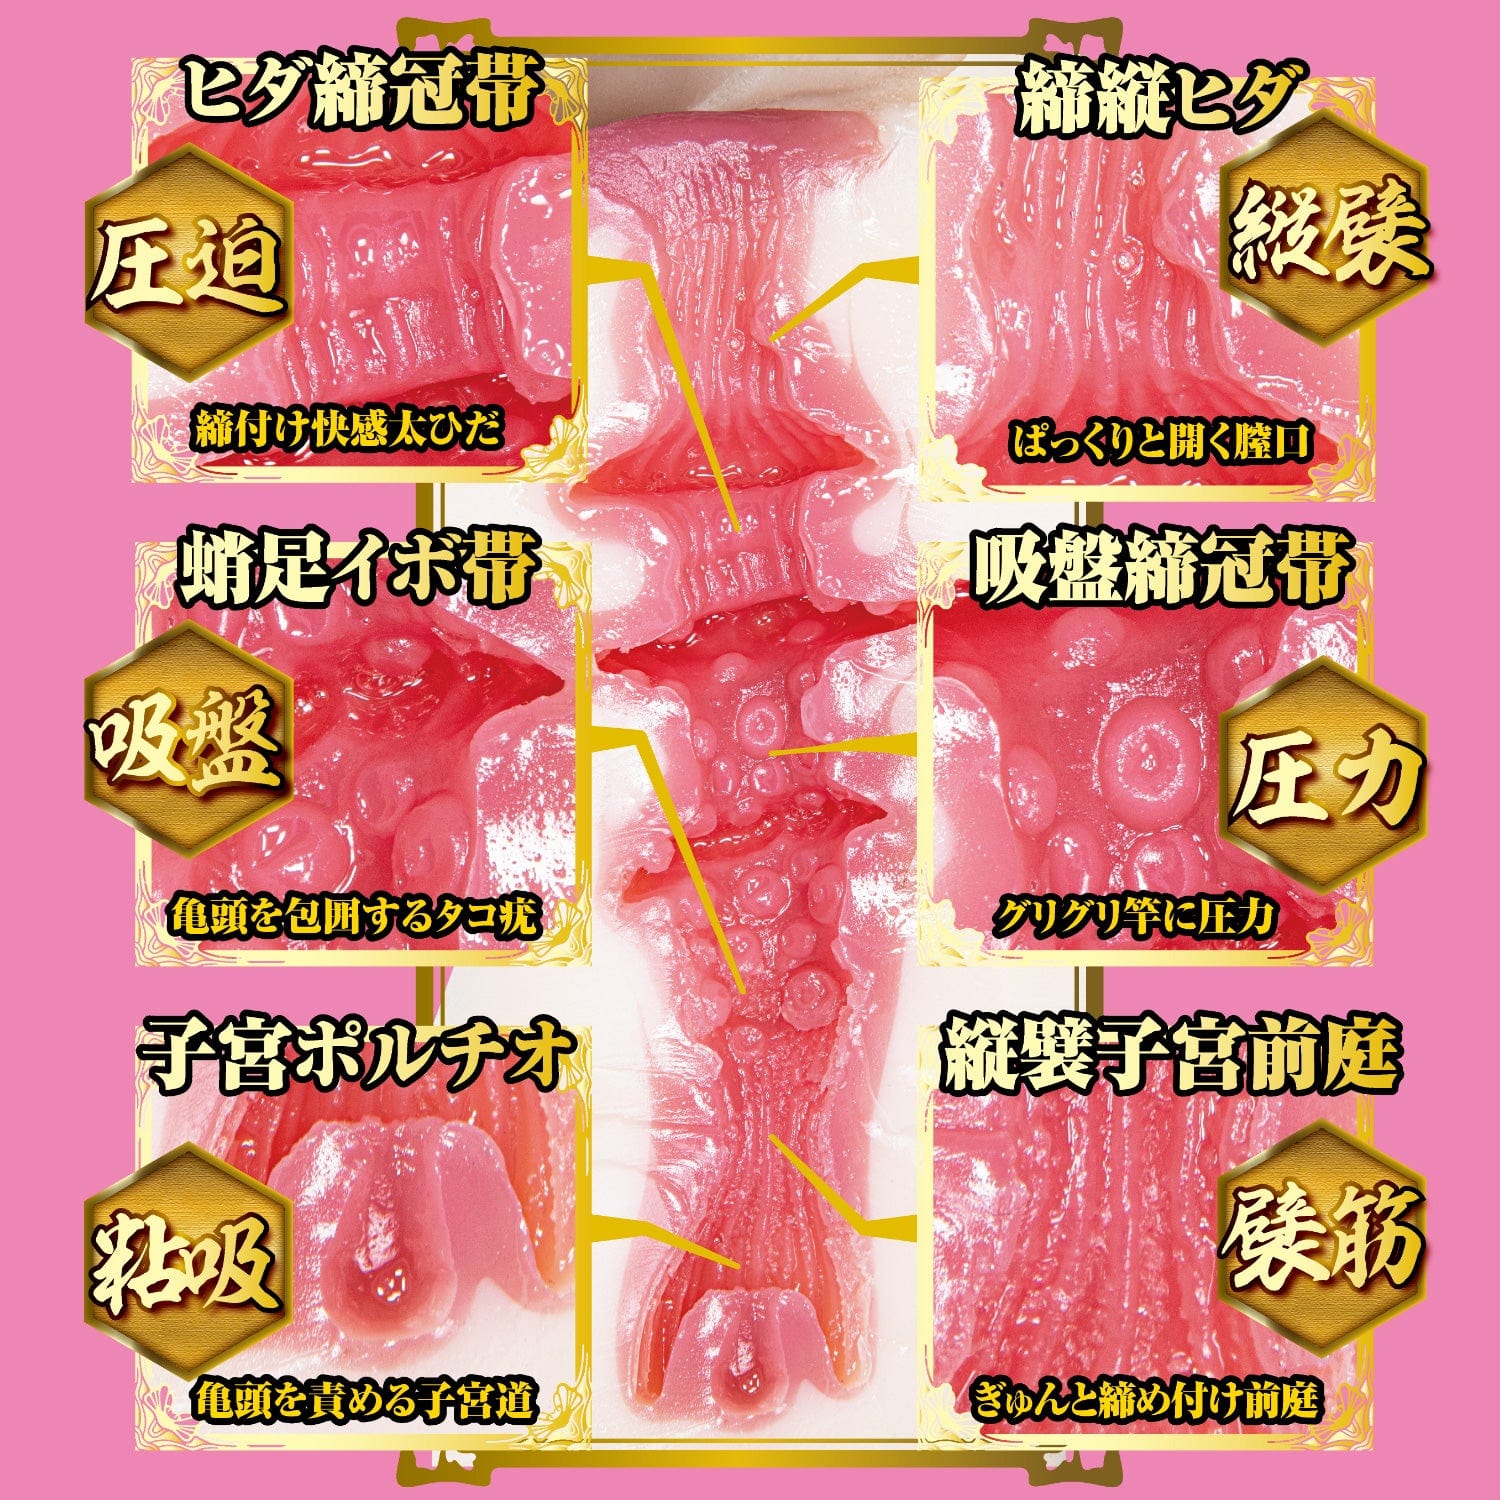 NPG - True Masterpiece 2 Meiki Rokka Ono Onahole (Beige) Masturbator Vagina (Non Vibration) 620217903 CherryAffairs